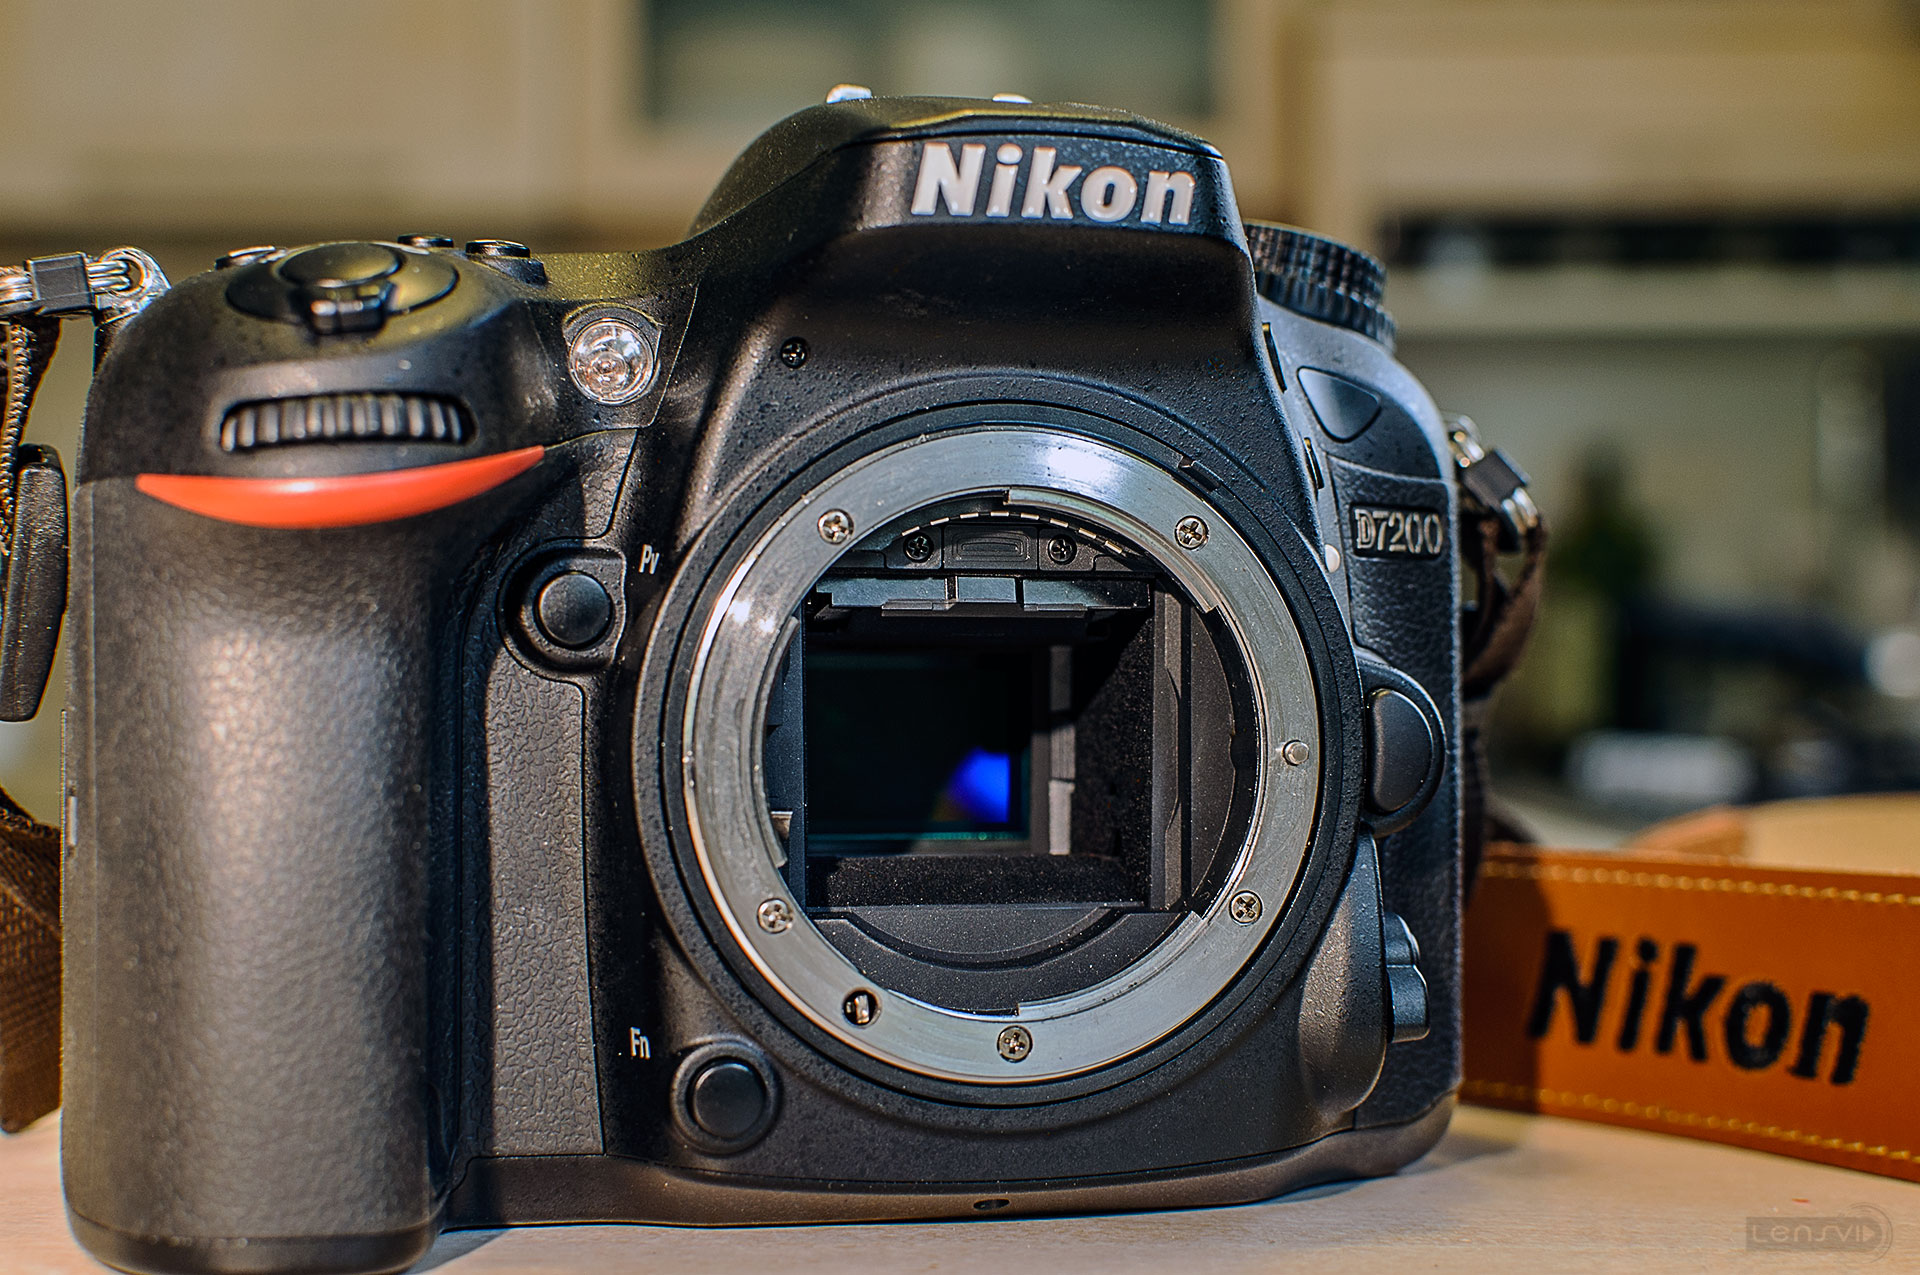 Nikon D7200 vs. Nikon D7100 Comparison and Review